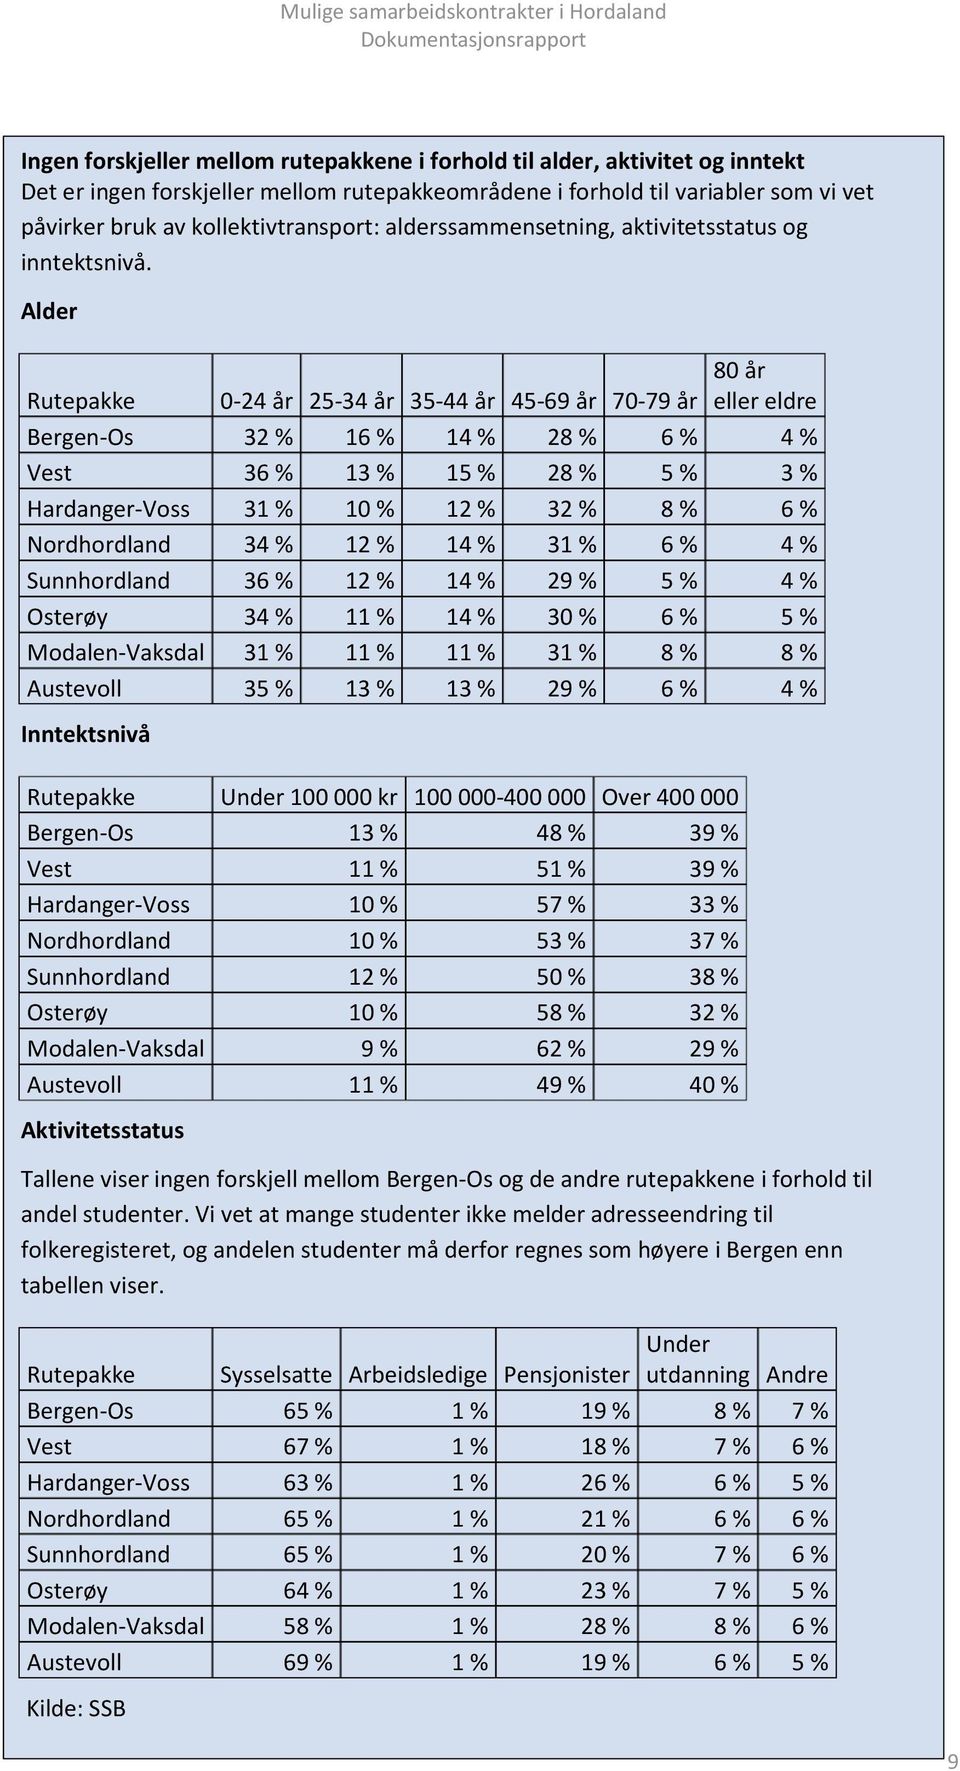 Alder 80 år Rutepakke 0-24 år 25-34 år 35-44 år 45-69 år 70-79 år eller eldre Bergen-Os 32 % 16 % 14 % 28 % 6 % 4 % Vest 36 % 13 % 15 % 28 % 5 % 3 % Hardanger-Voss 31 % 10 % 12 % 32 % 8 % 6 %